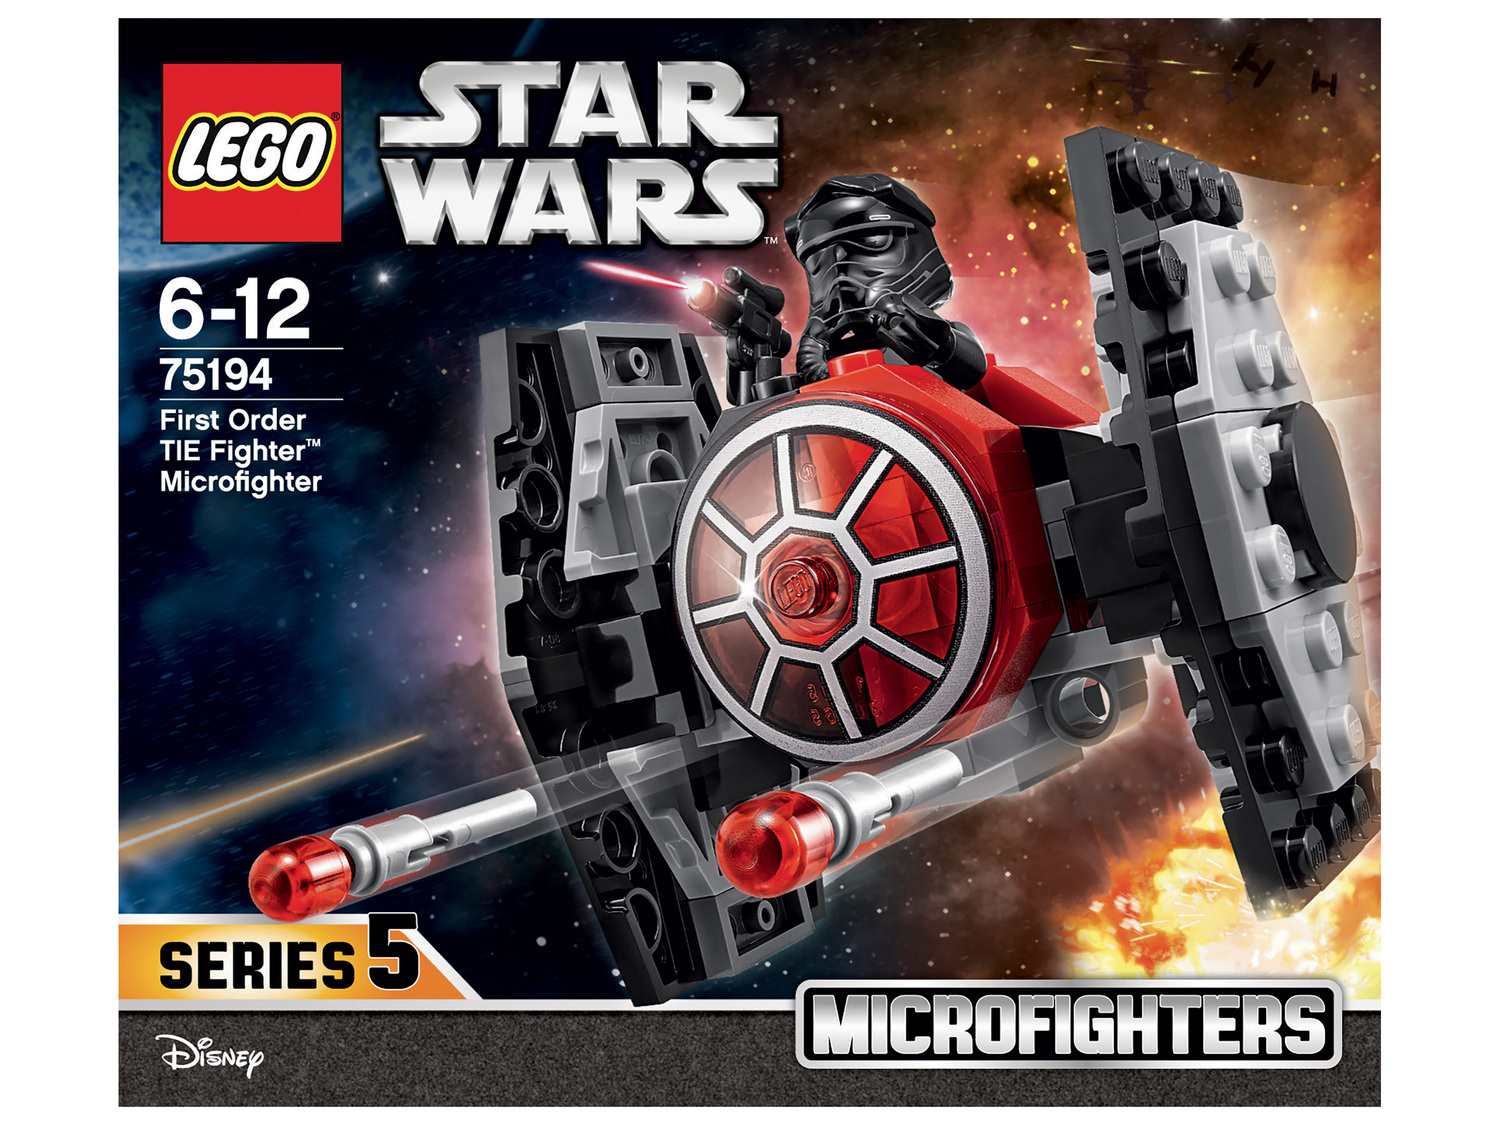 Jeu de construction Star Wars petit modèle Lego, Star wars 75223 75194 75224, le ...